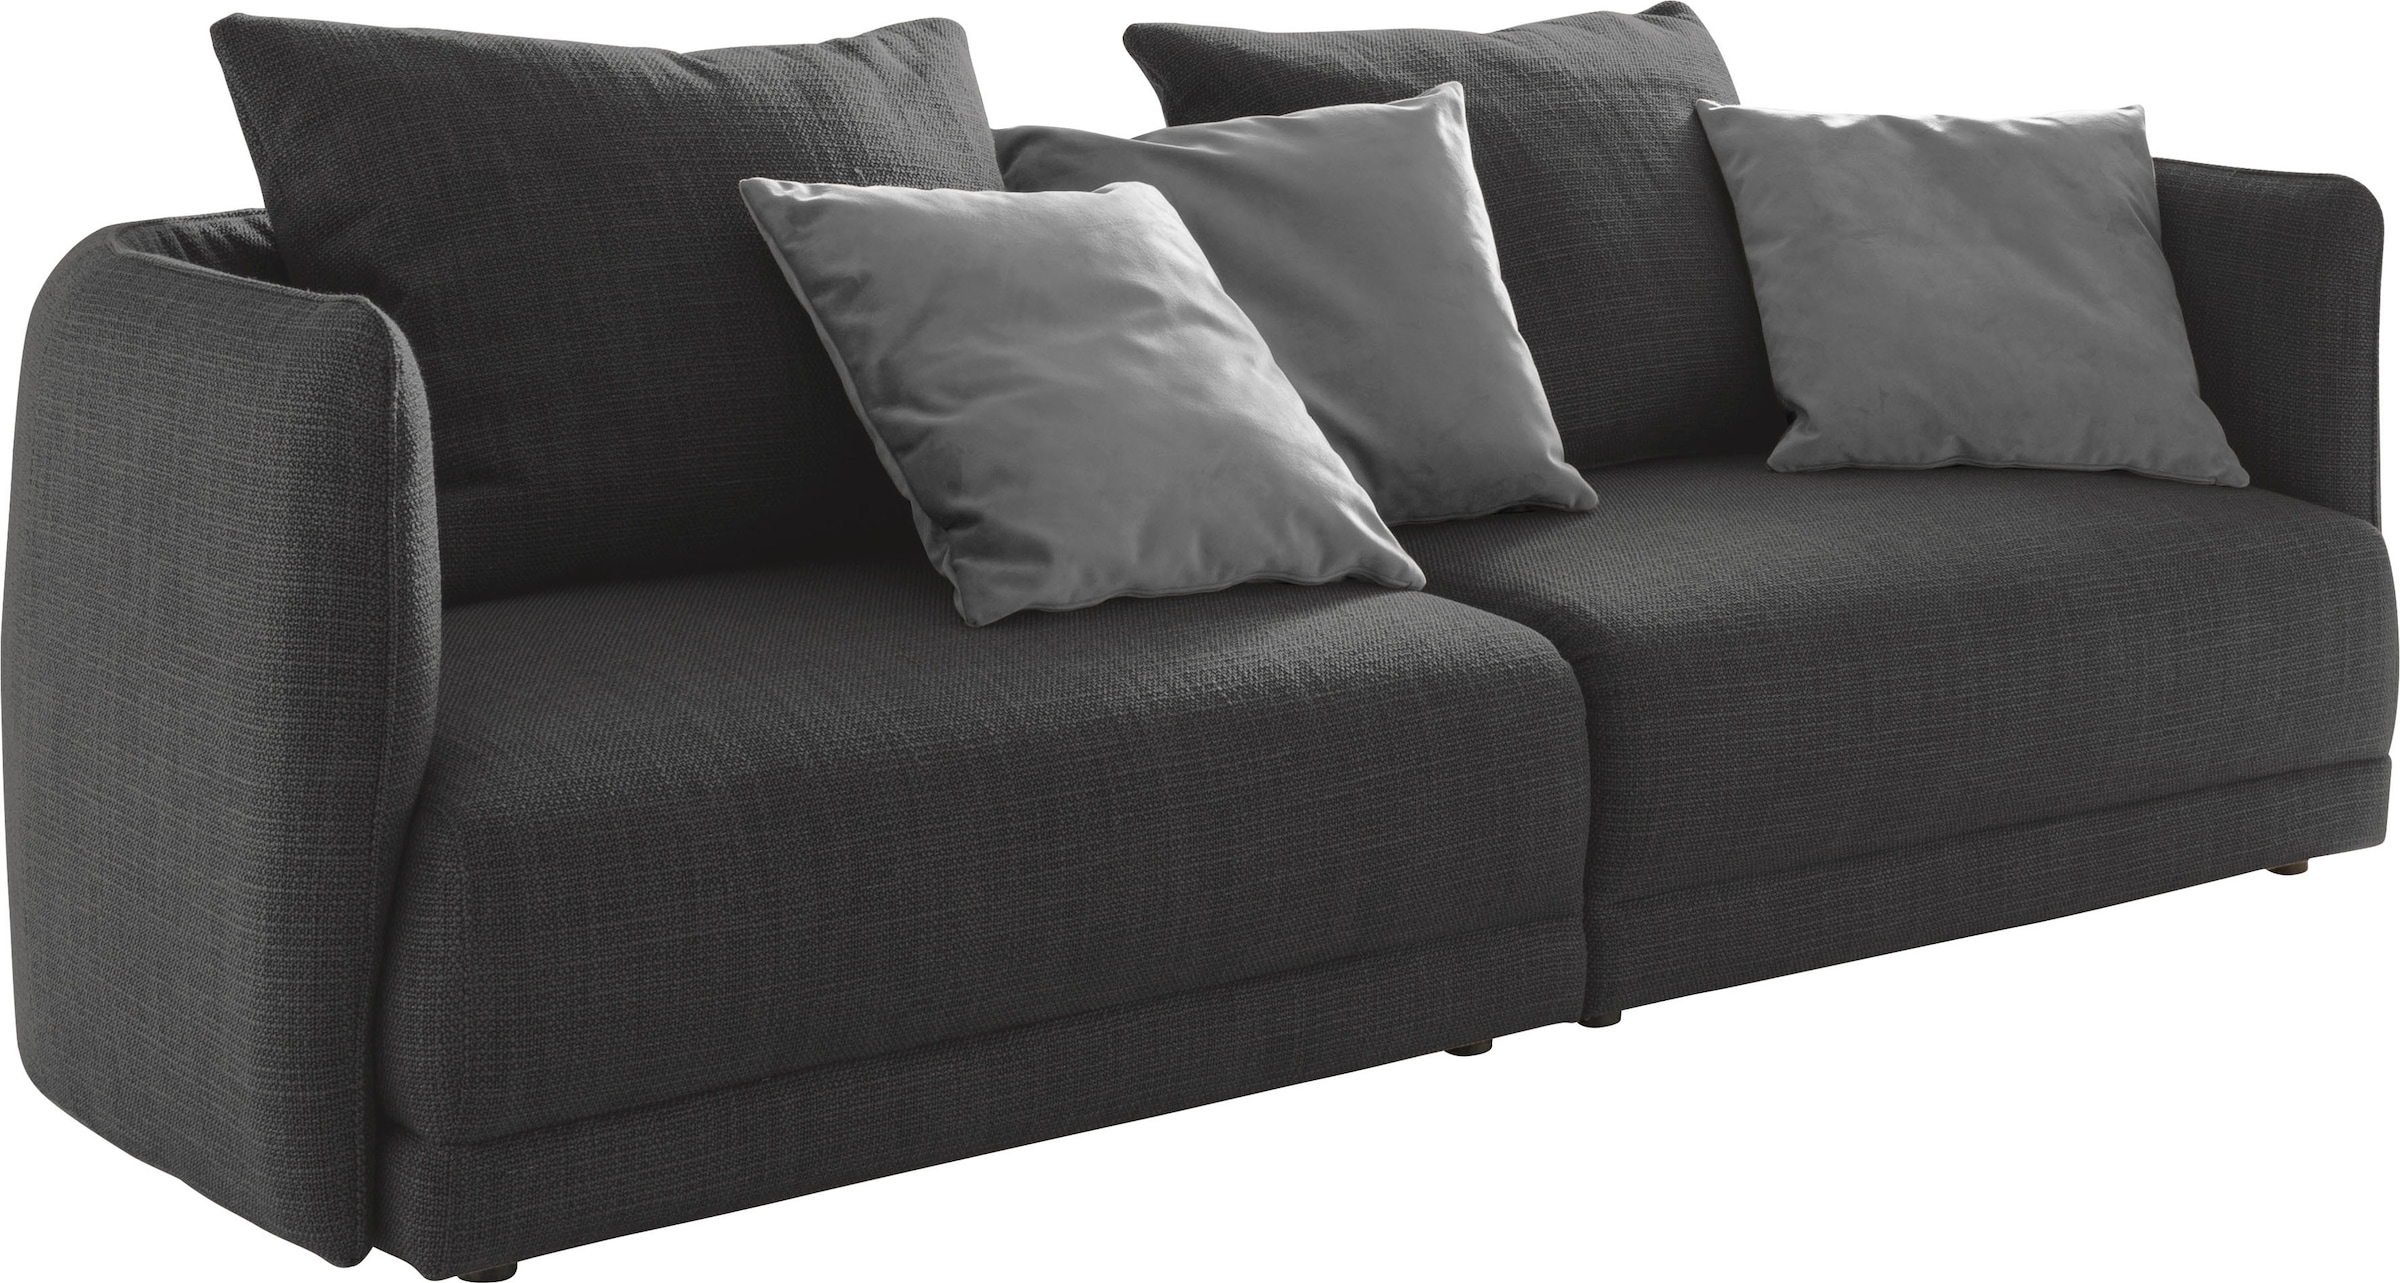 Big-Sofa »New York«, Breite 253 cm, mit schmaler Arm- und Rückenlehne